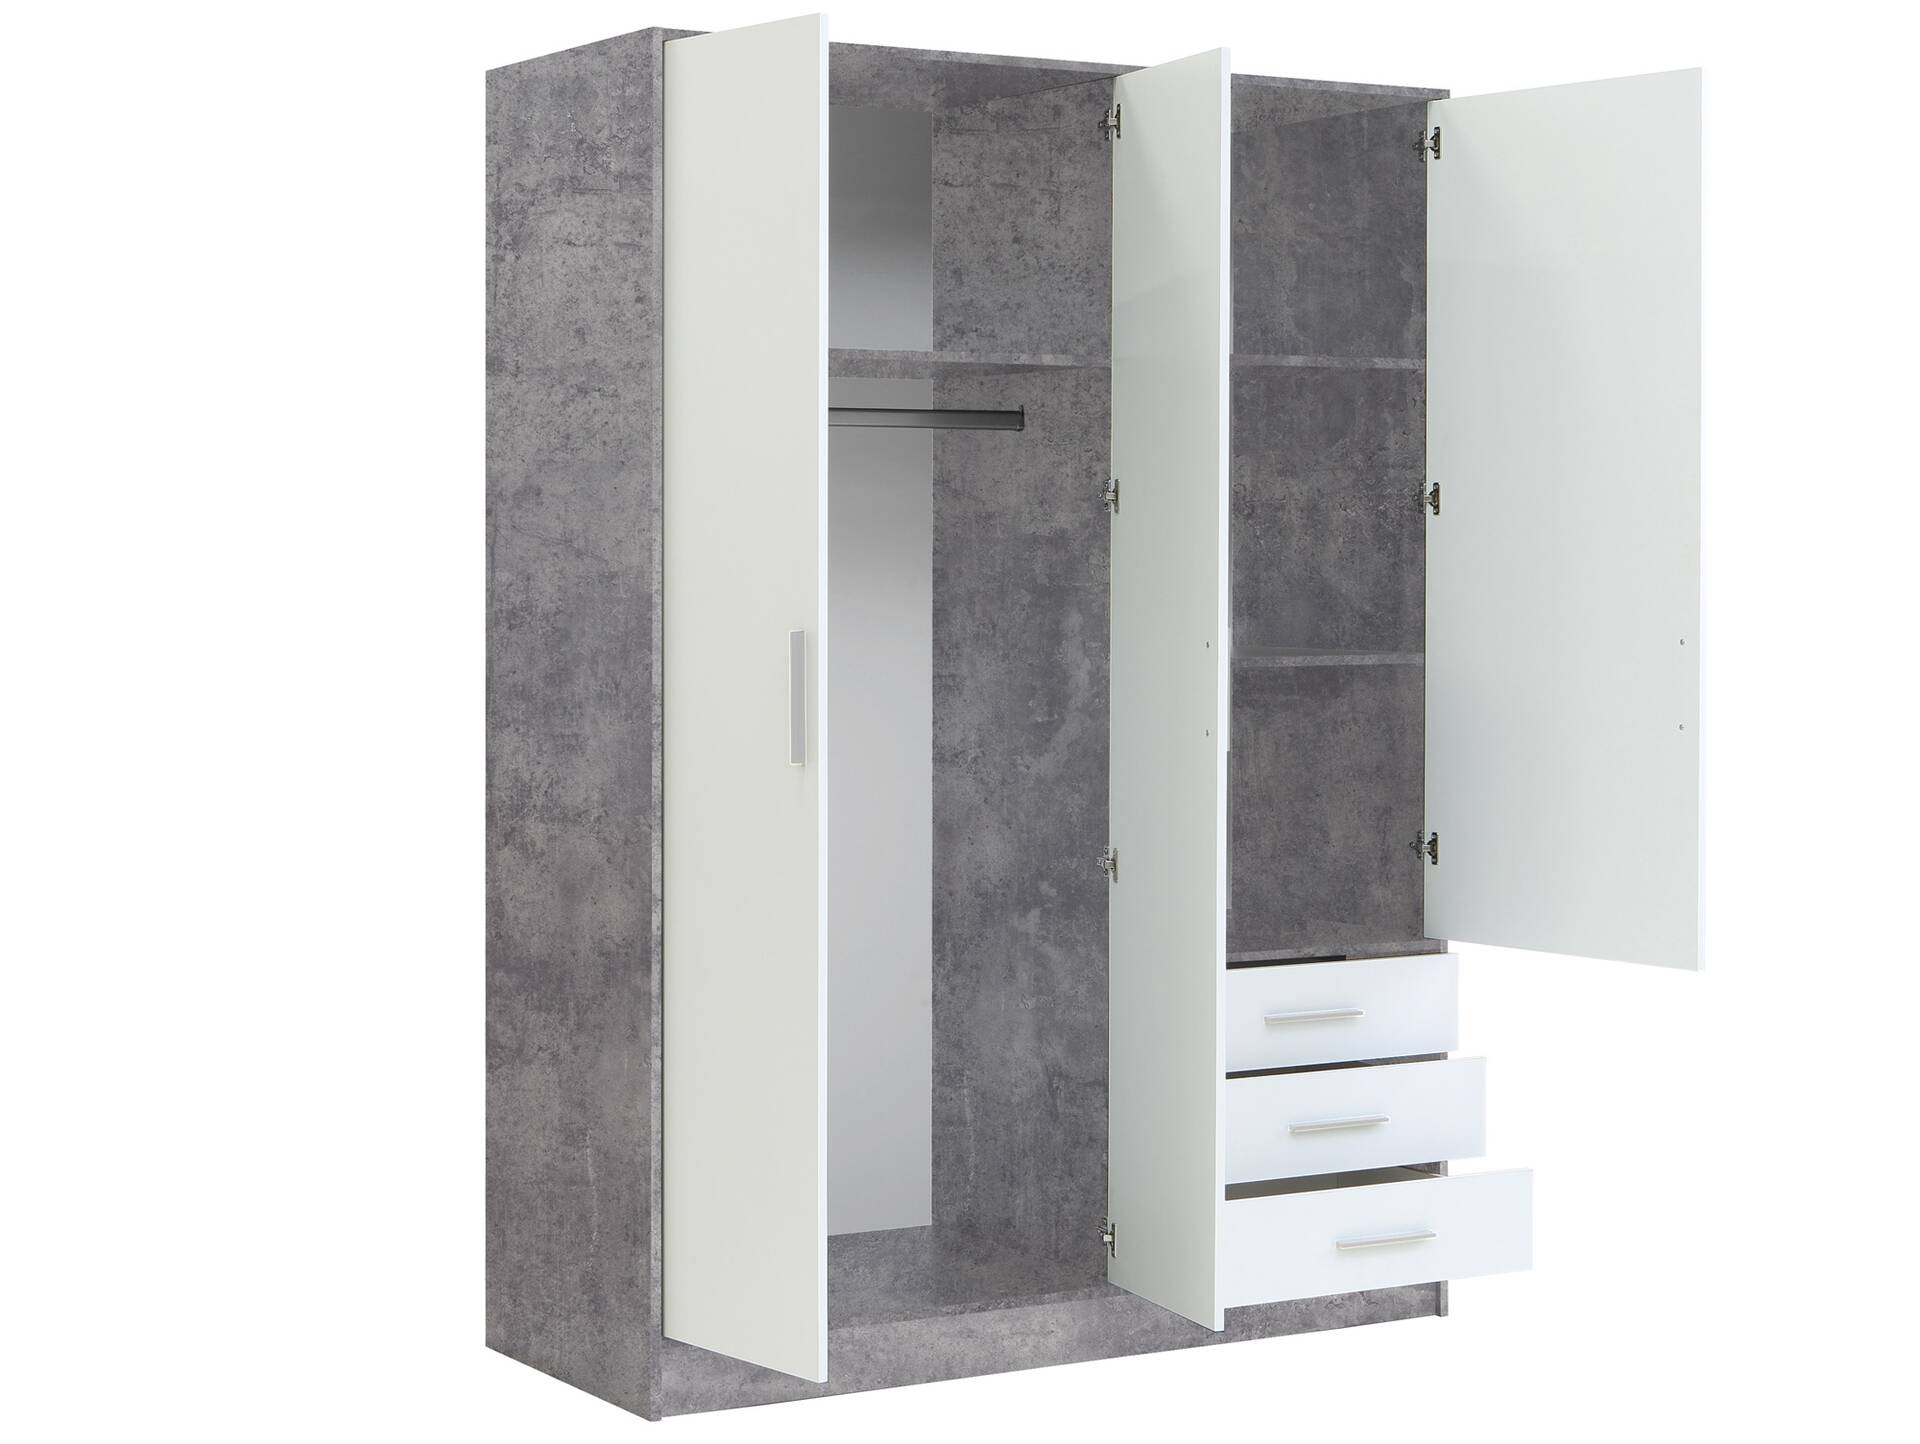 JAMI Kleiderschrank 3-trg mit 3 Schubkästen, Material Dekorspanplatte betonfarbig / weiss